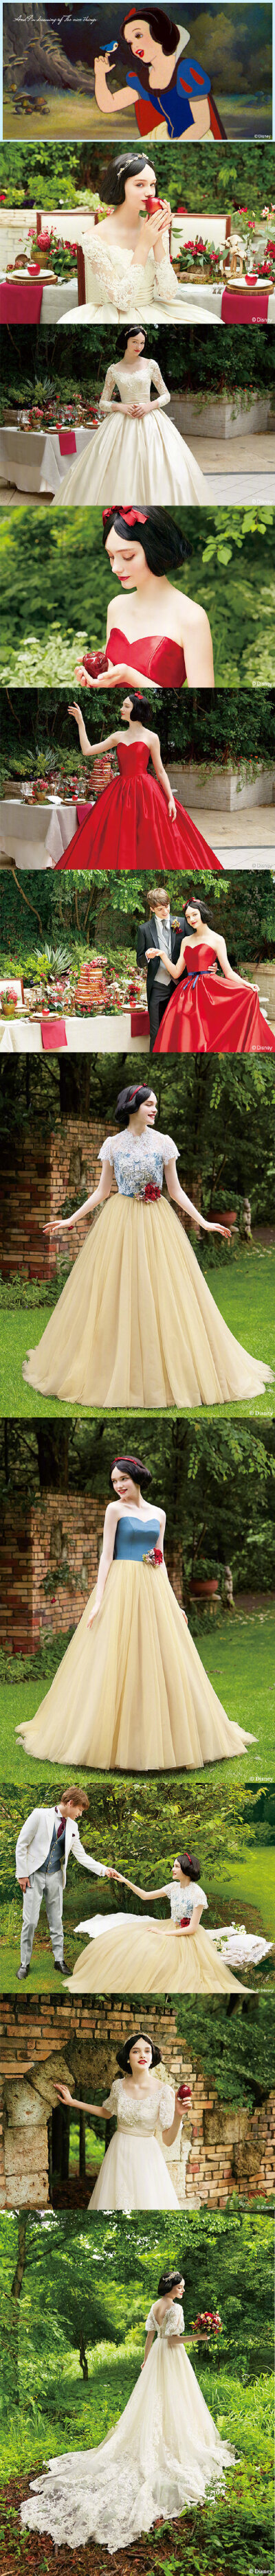 迪士尼和日本婚纱品牌KURAUDIA联名发布了新娘礼服